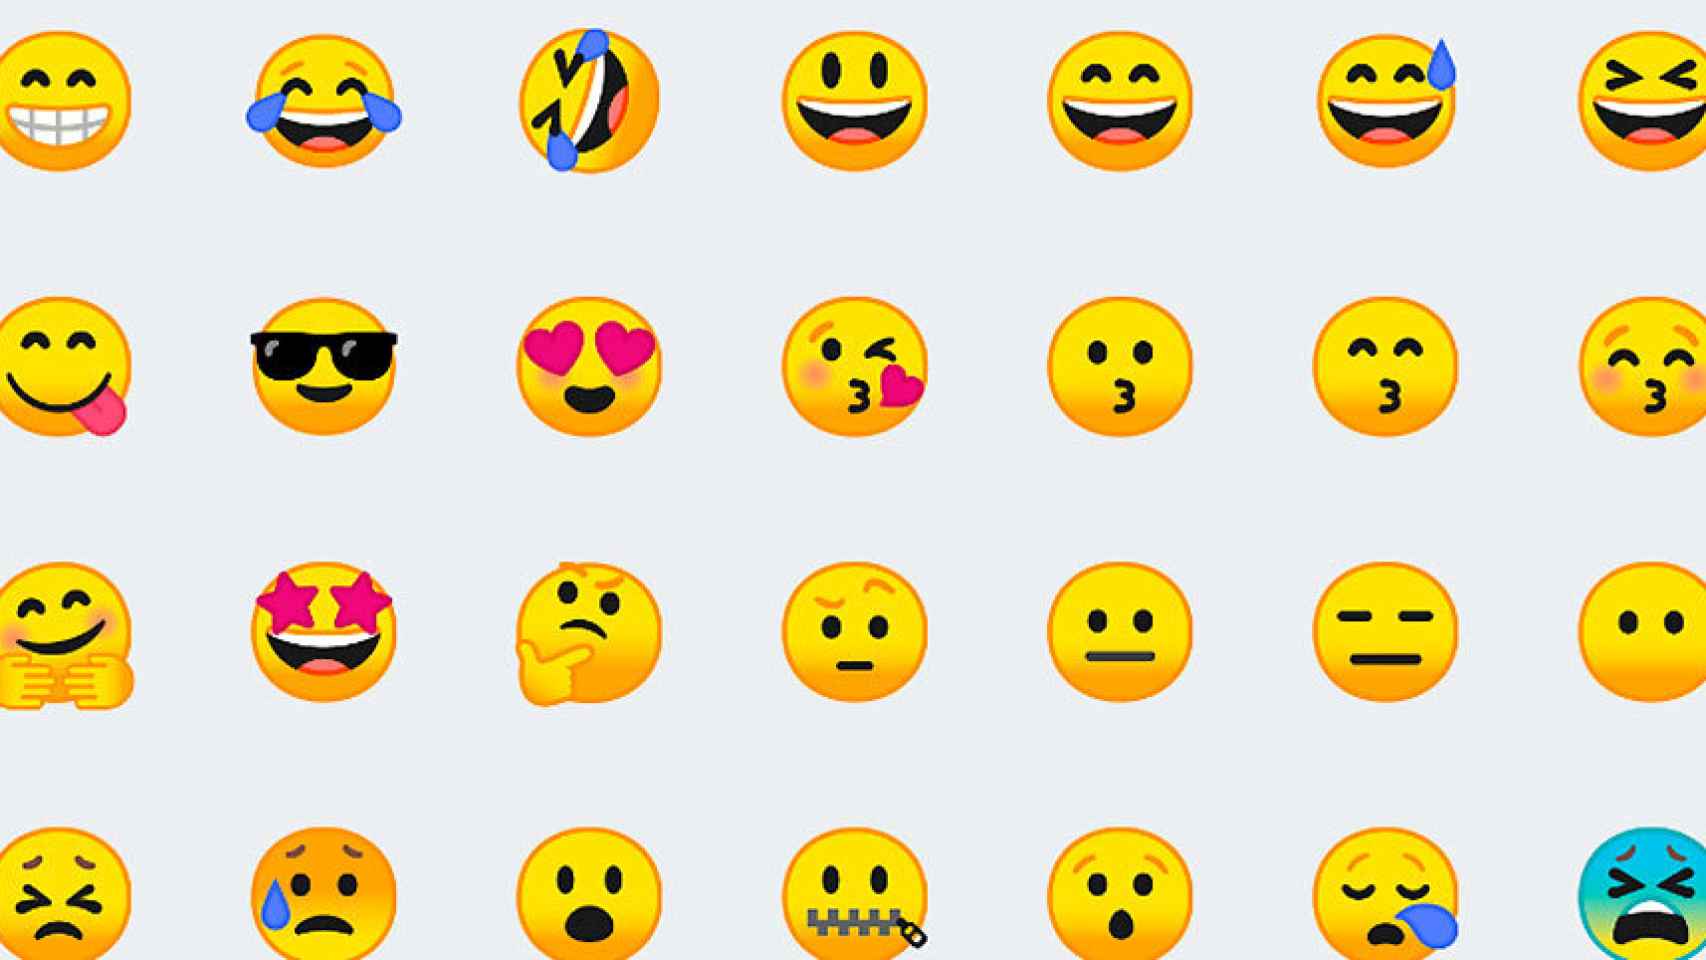 Gboard podrá poner los emojis por ti